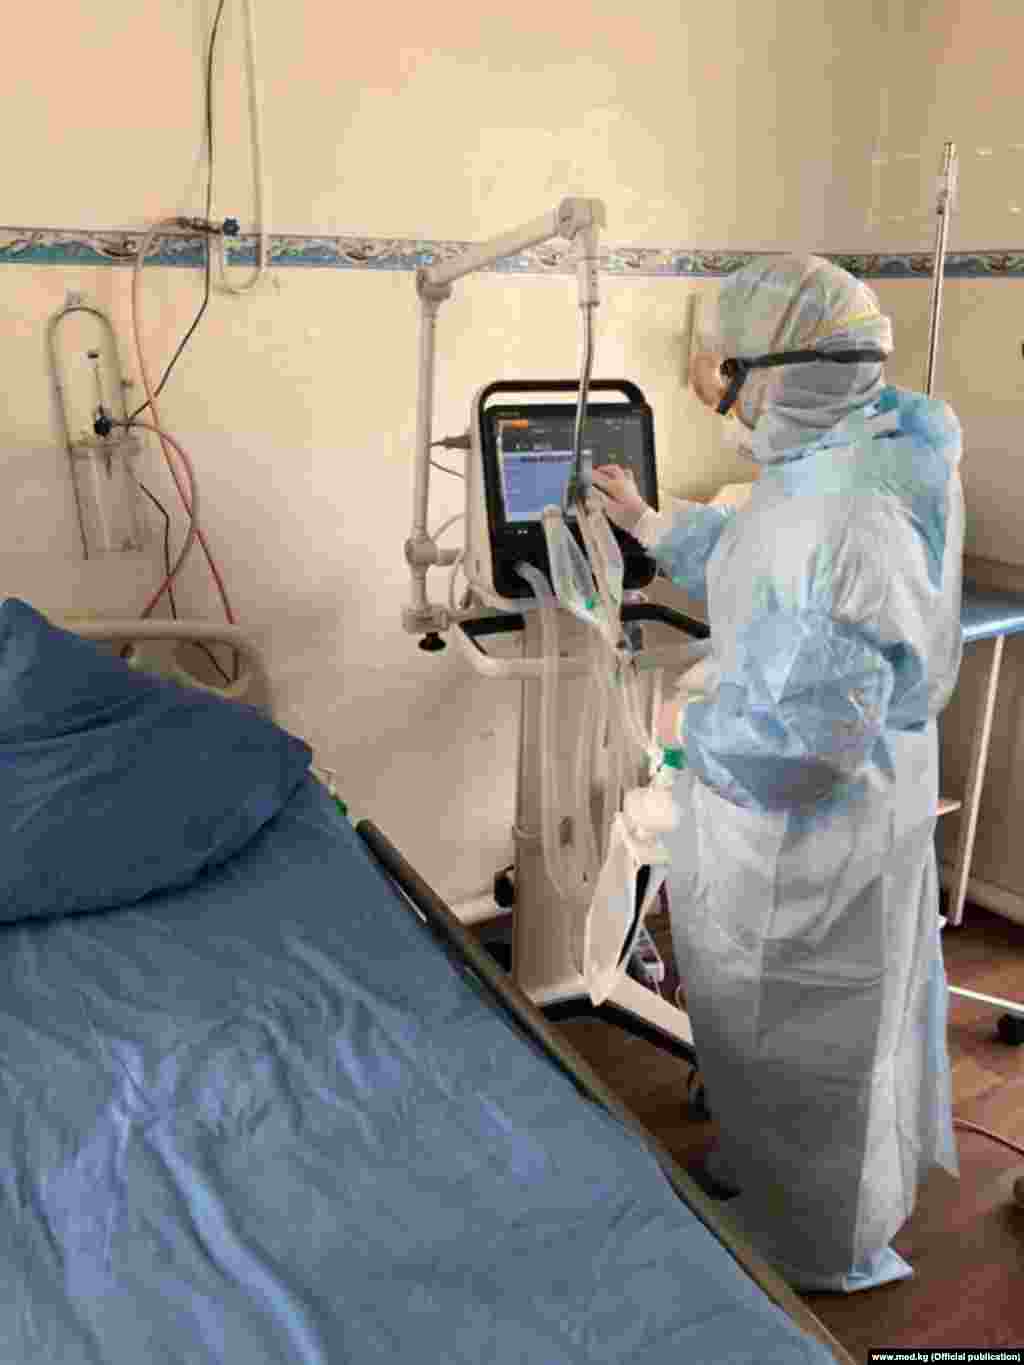 Аппарат ИВЛ, подаренный международными донорами Республиканской клинической инфекционной больнице (РКИБ) в городе Бишкеке. 24 марта 2020 г.